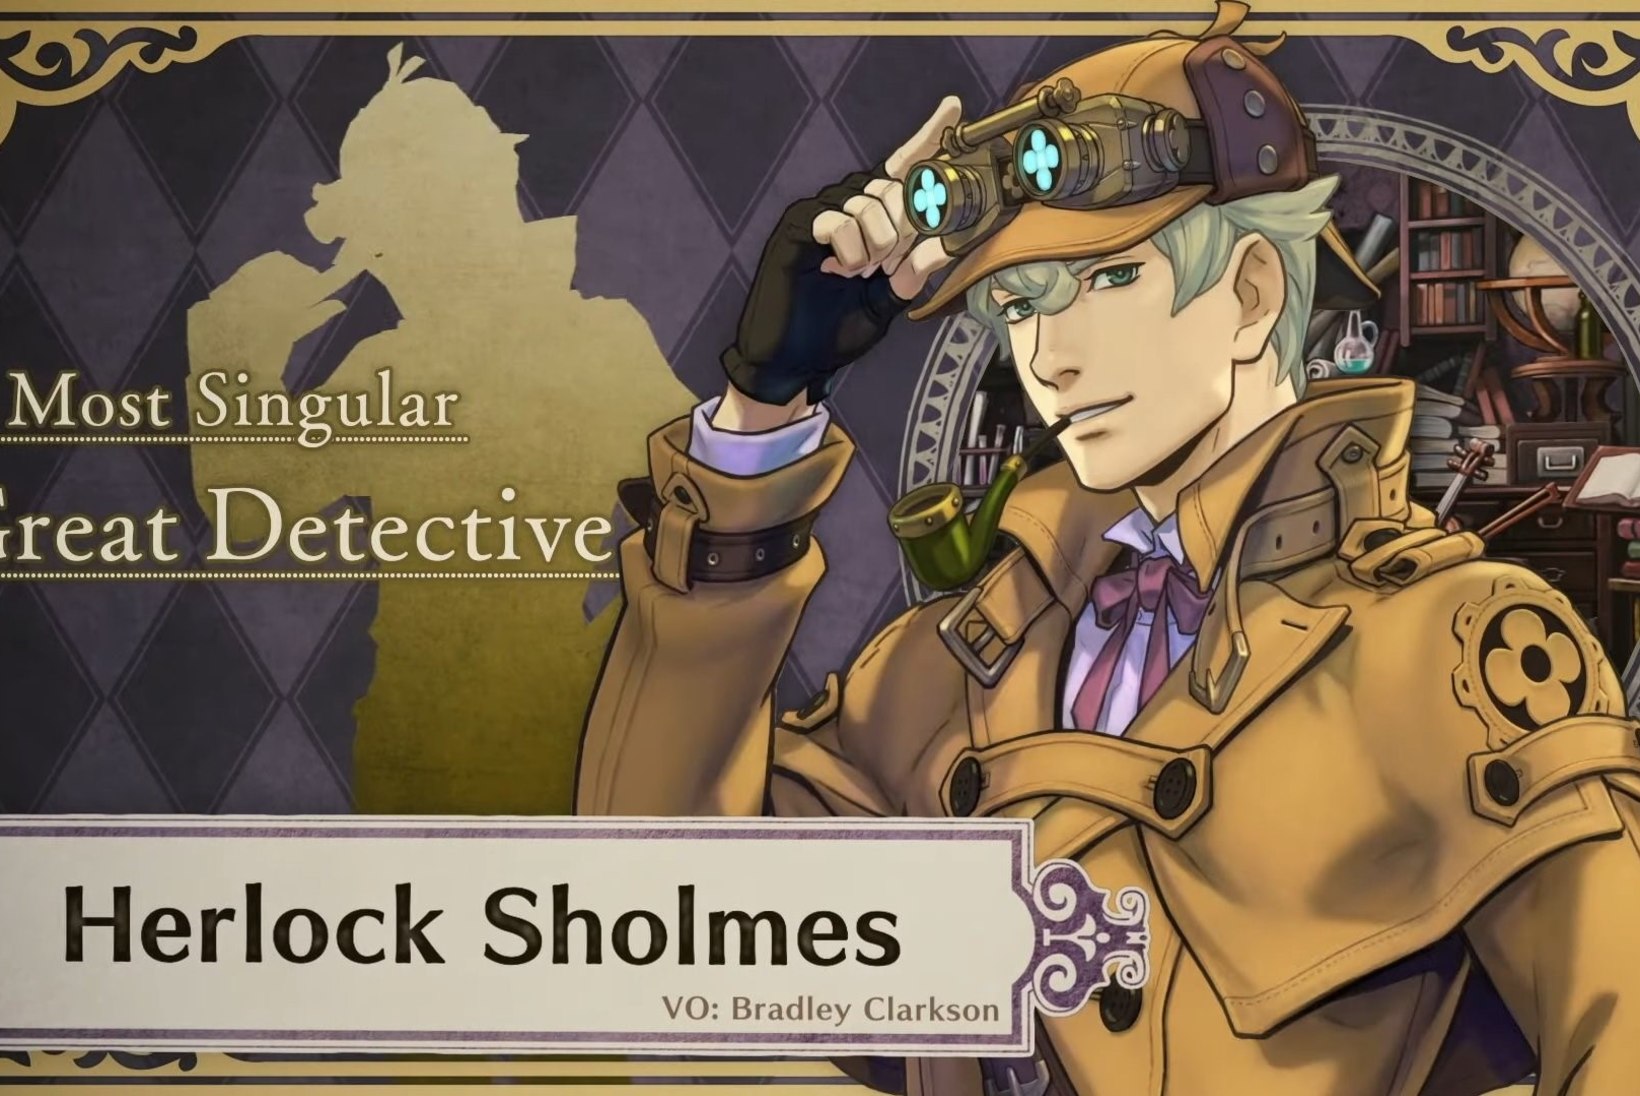 Sherlock Holmesi nimi uues mängus on Herlock Sholmes ja sellel on üks äärmiselt jabur põhjus